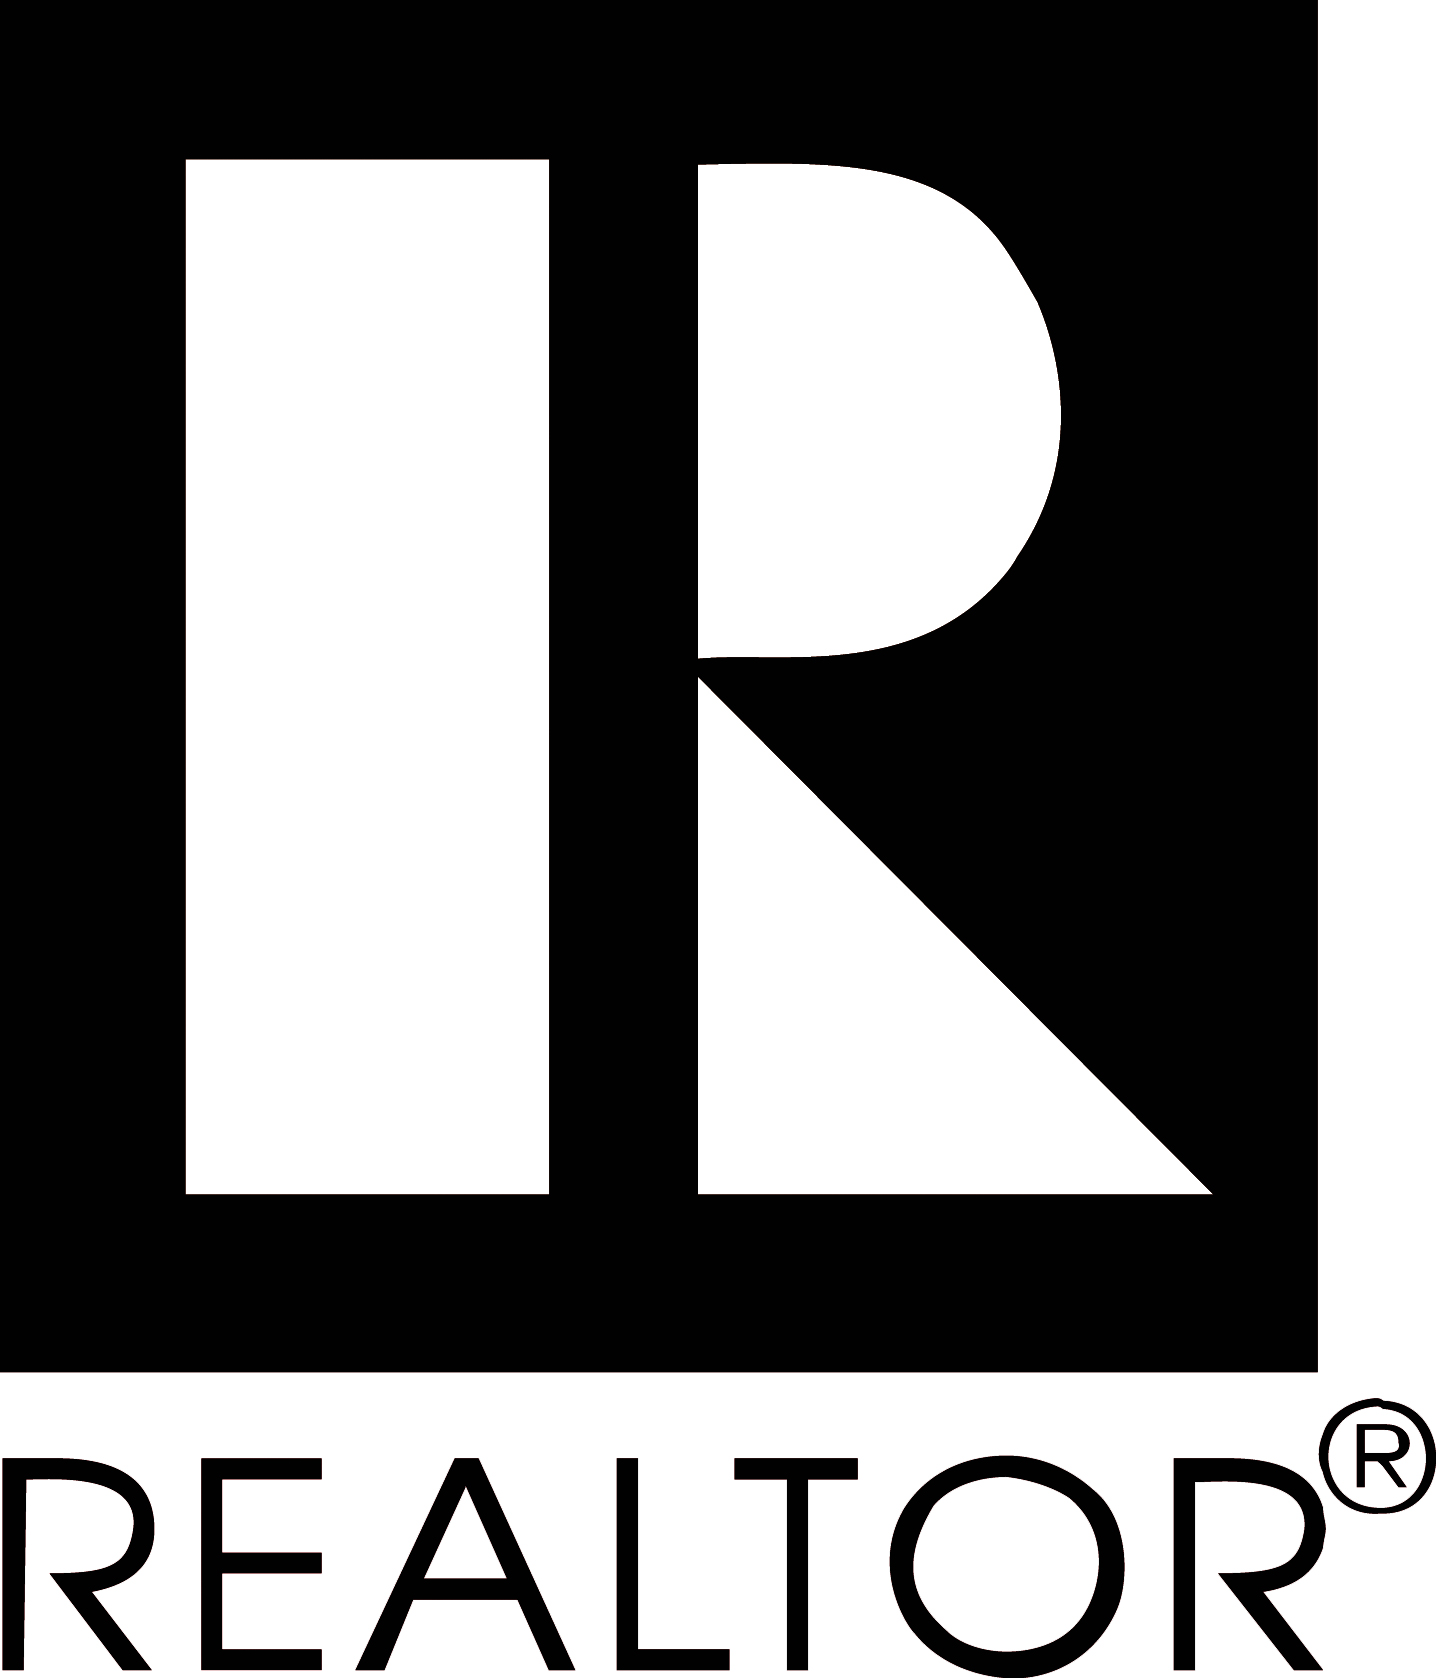 Real Estate MLS Logo - Downloadable Real Estate Industry Logos REALTORS